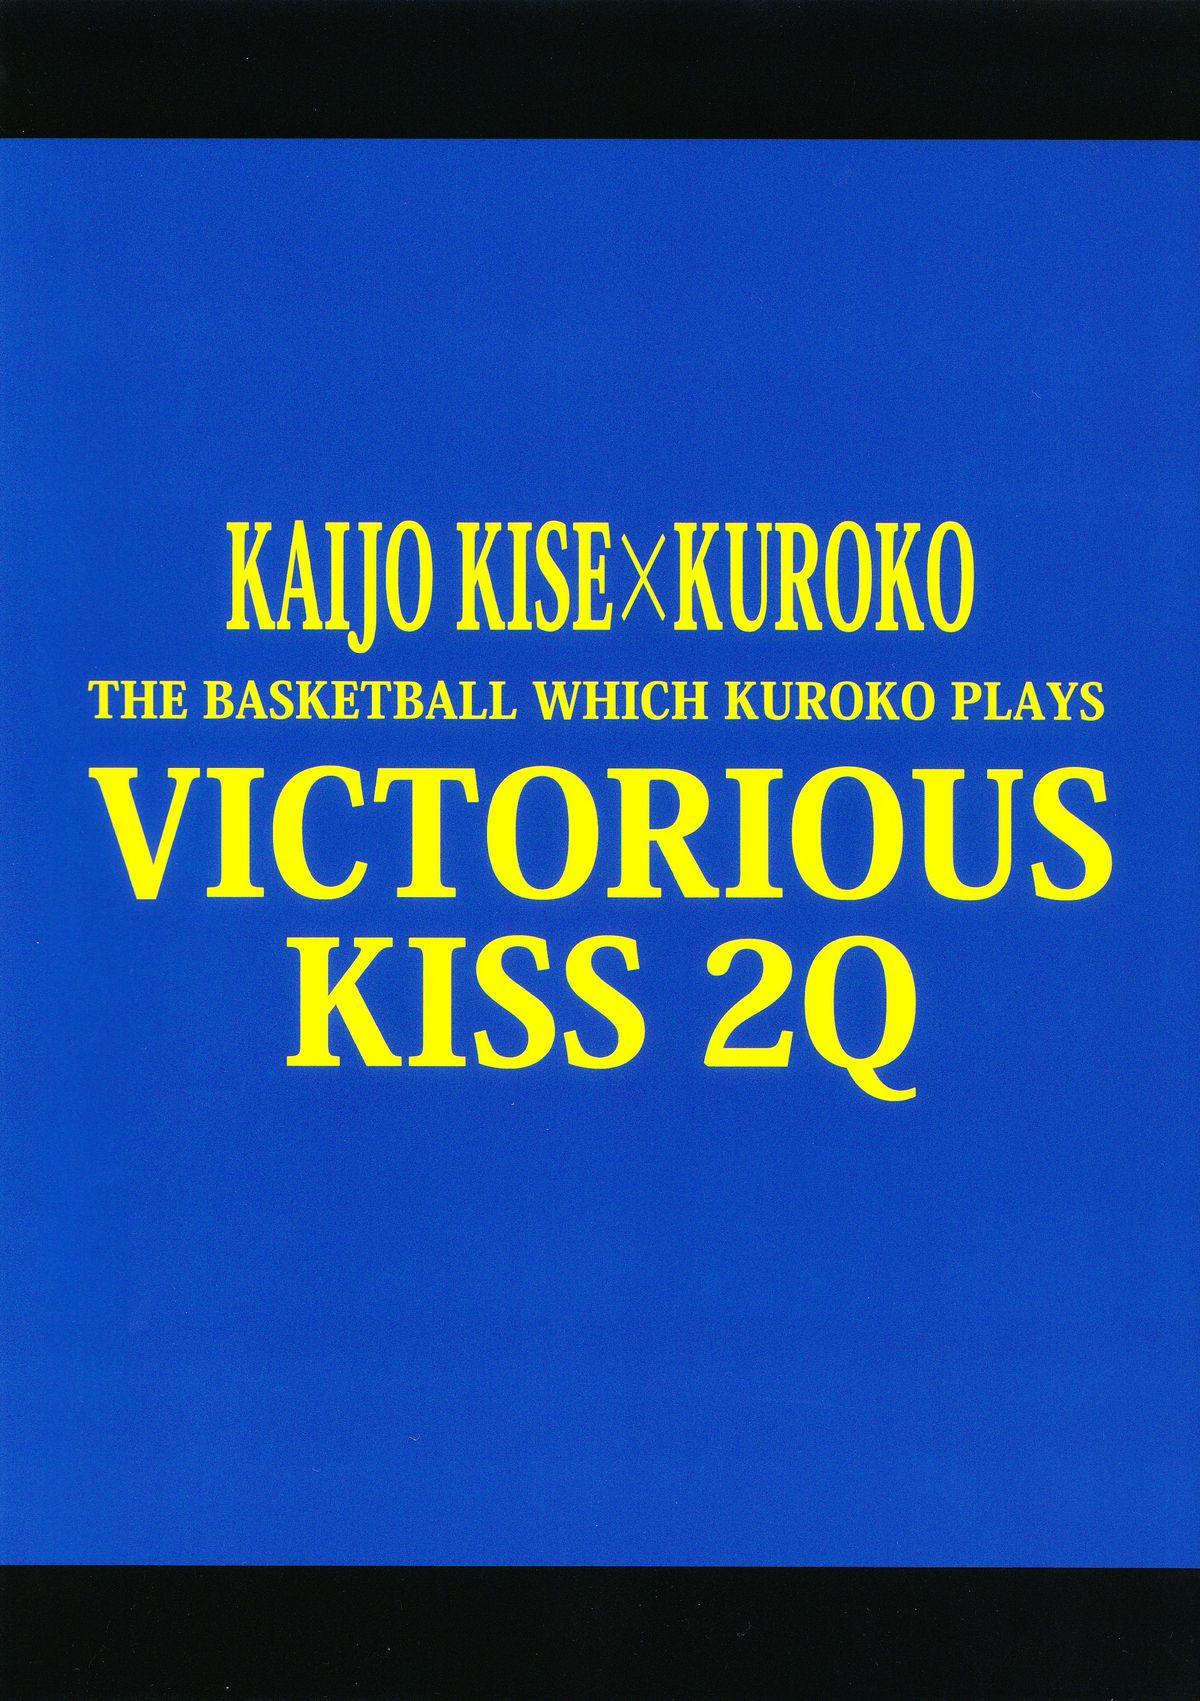 VICTORIOUS KISS 2Q 33